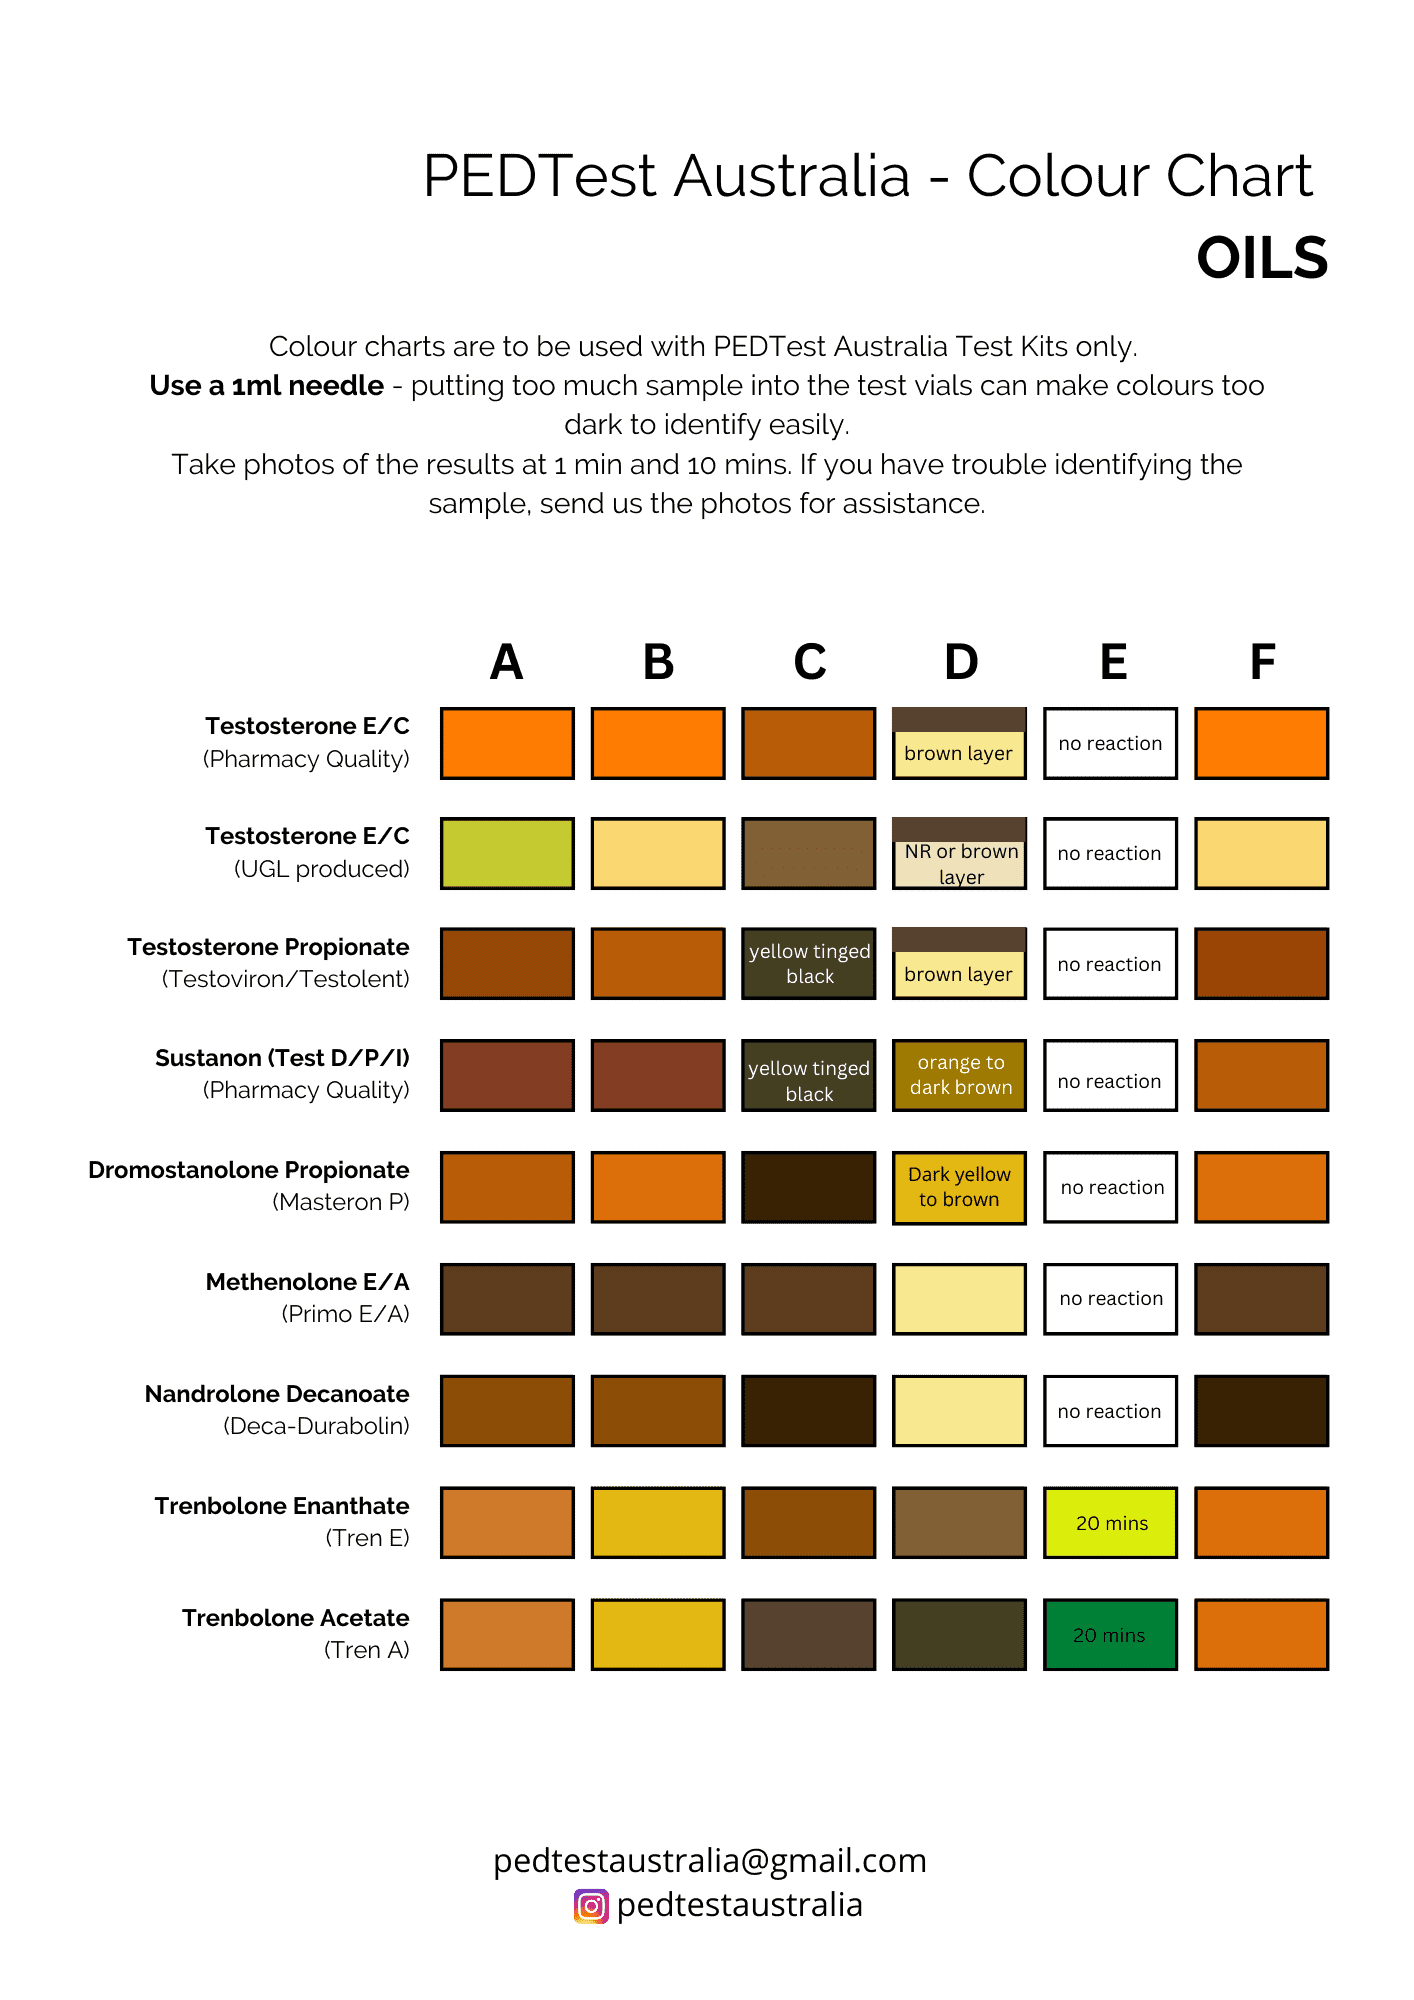 Colour chart - oils